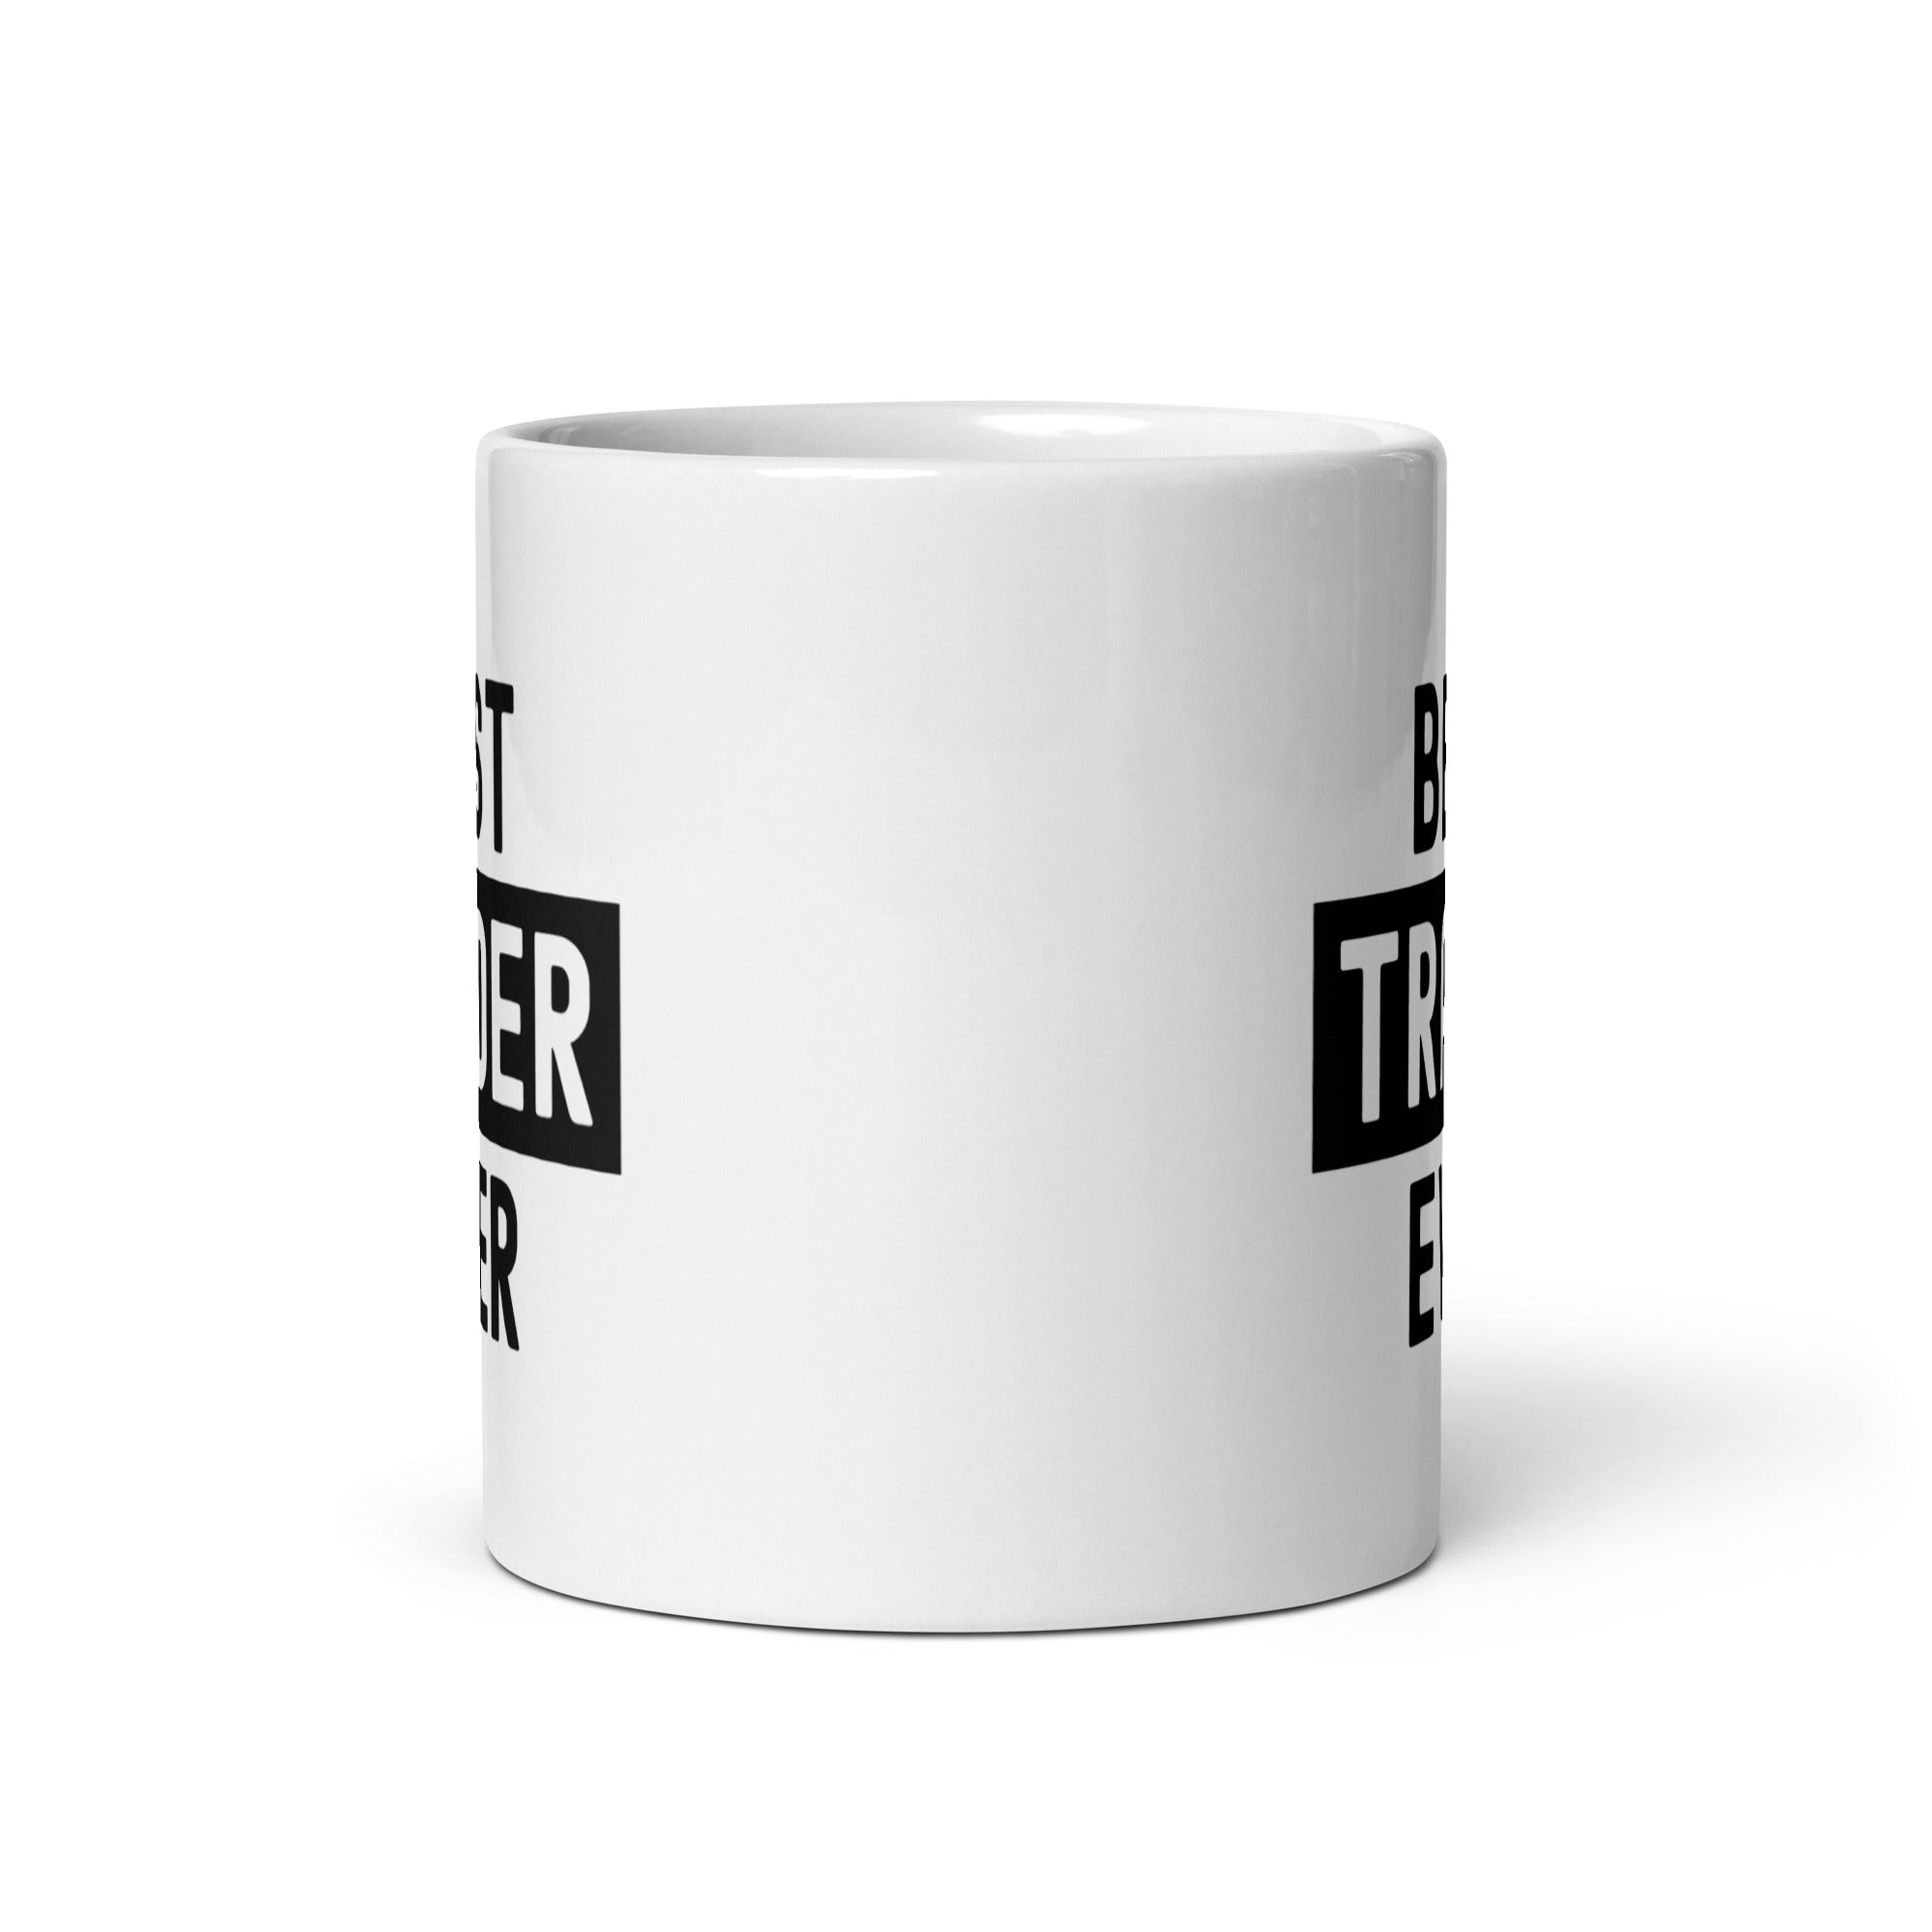 White glossy mug | Best. Trader. Ever.